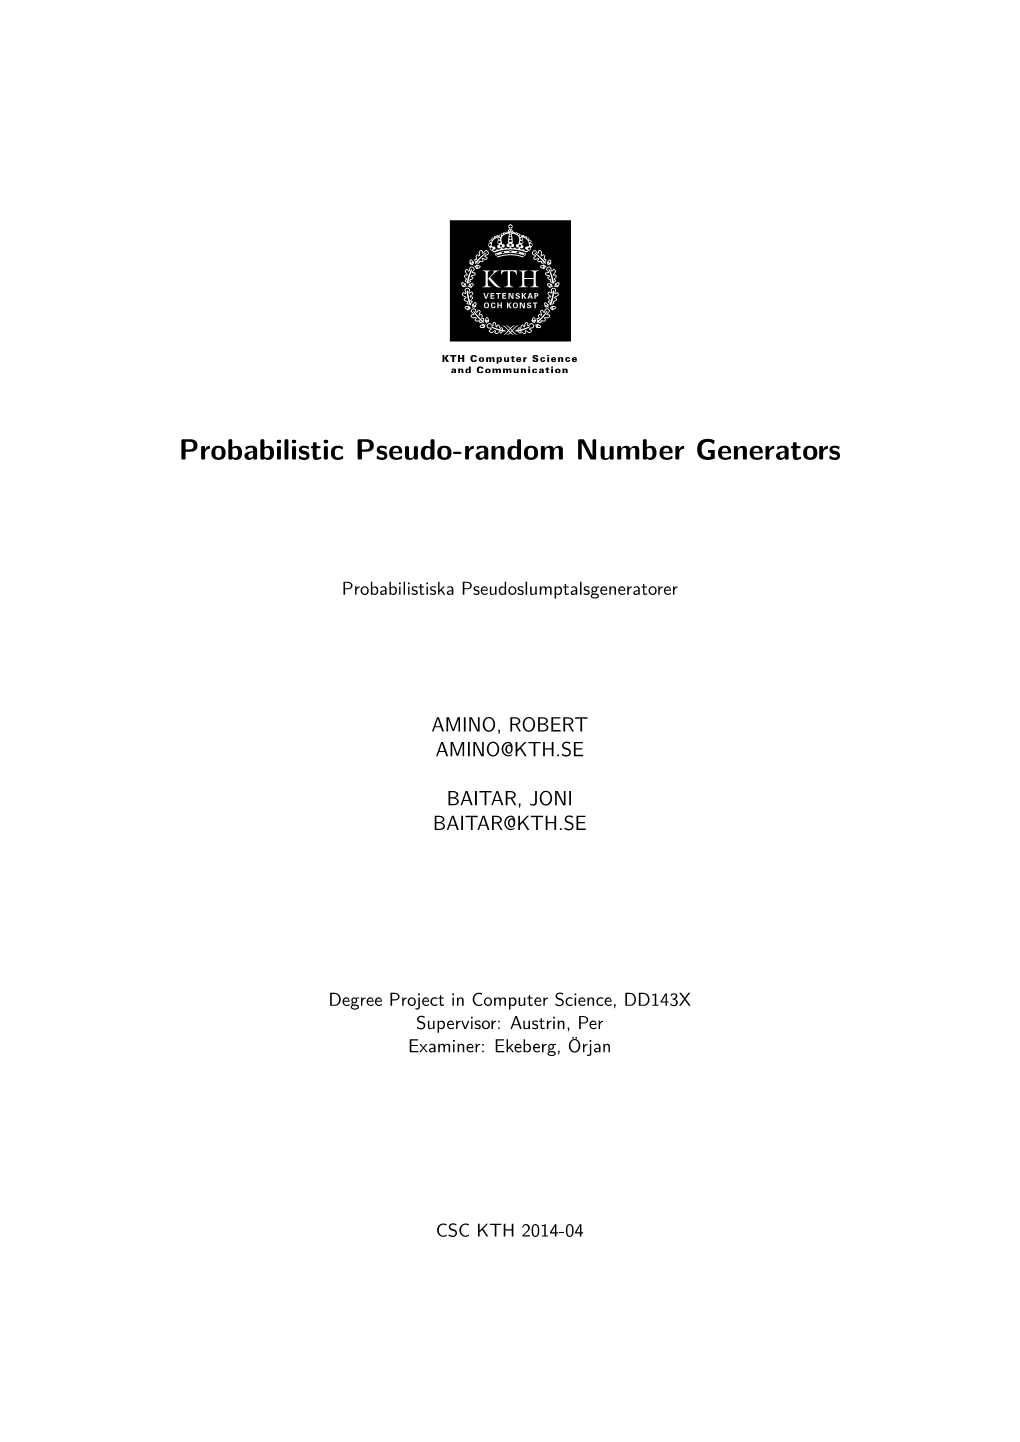 Probabilistic Pseudo-Random Number Generators